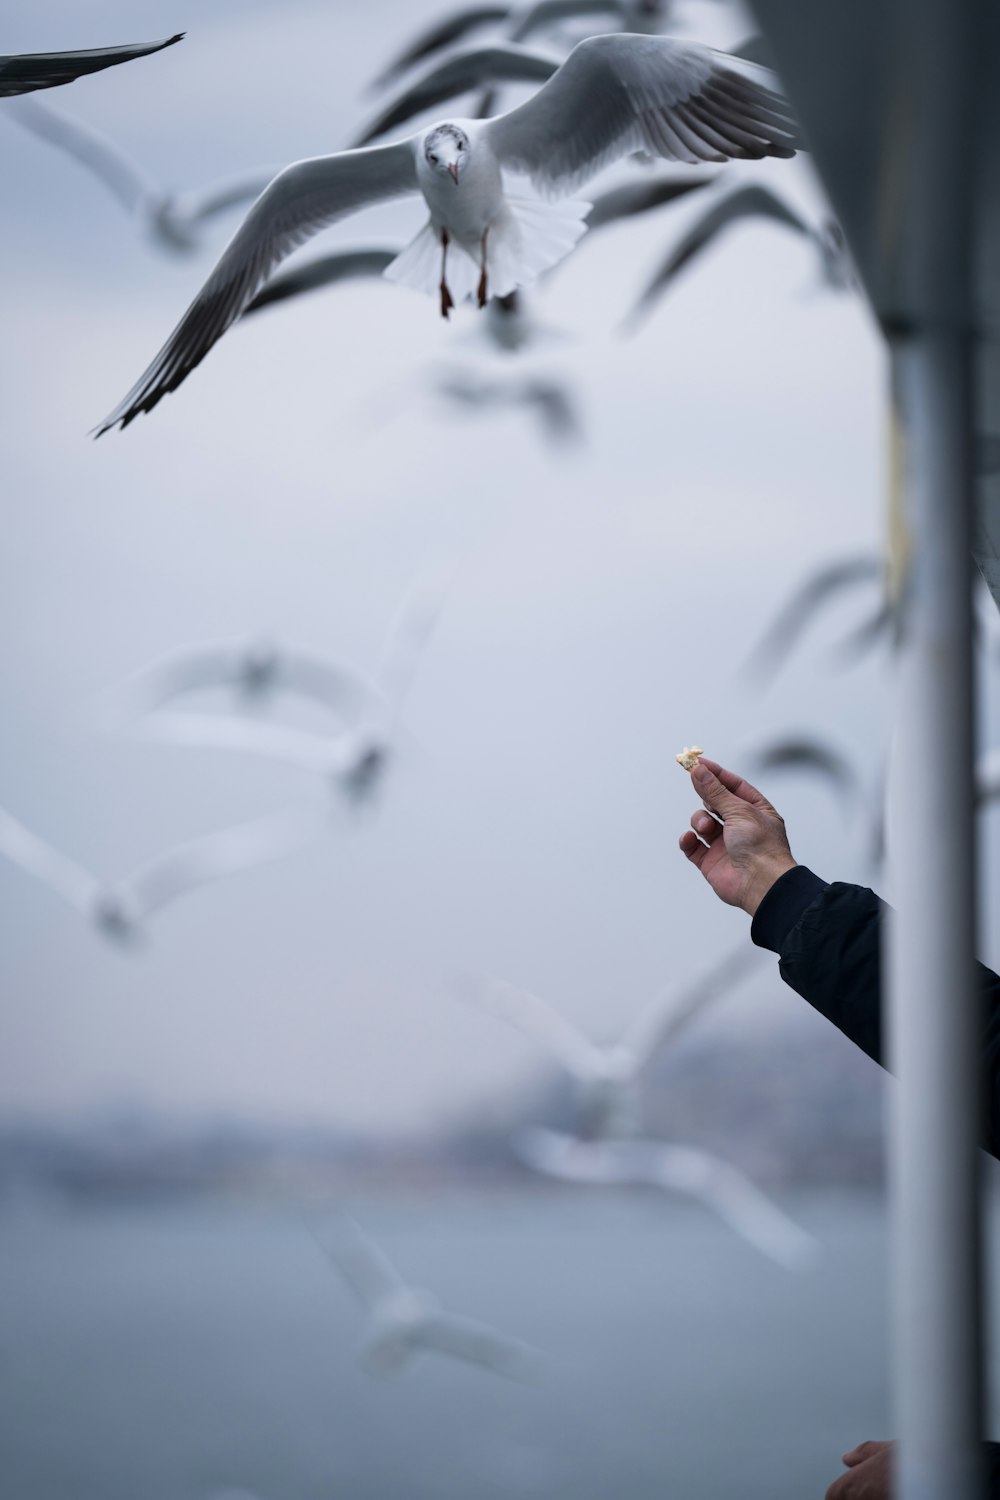 a person feeding a bird